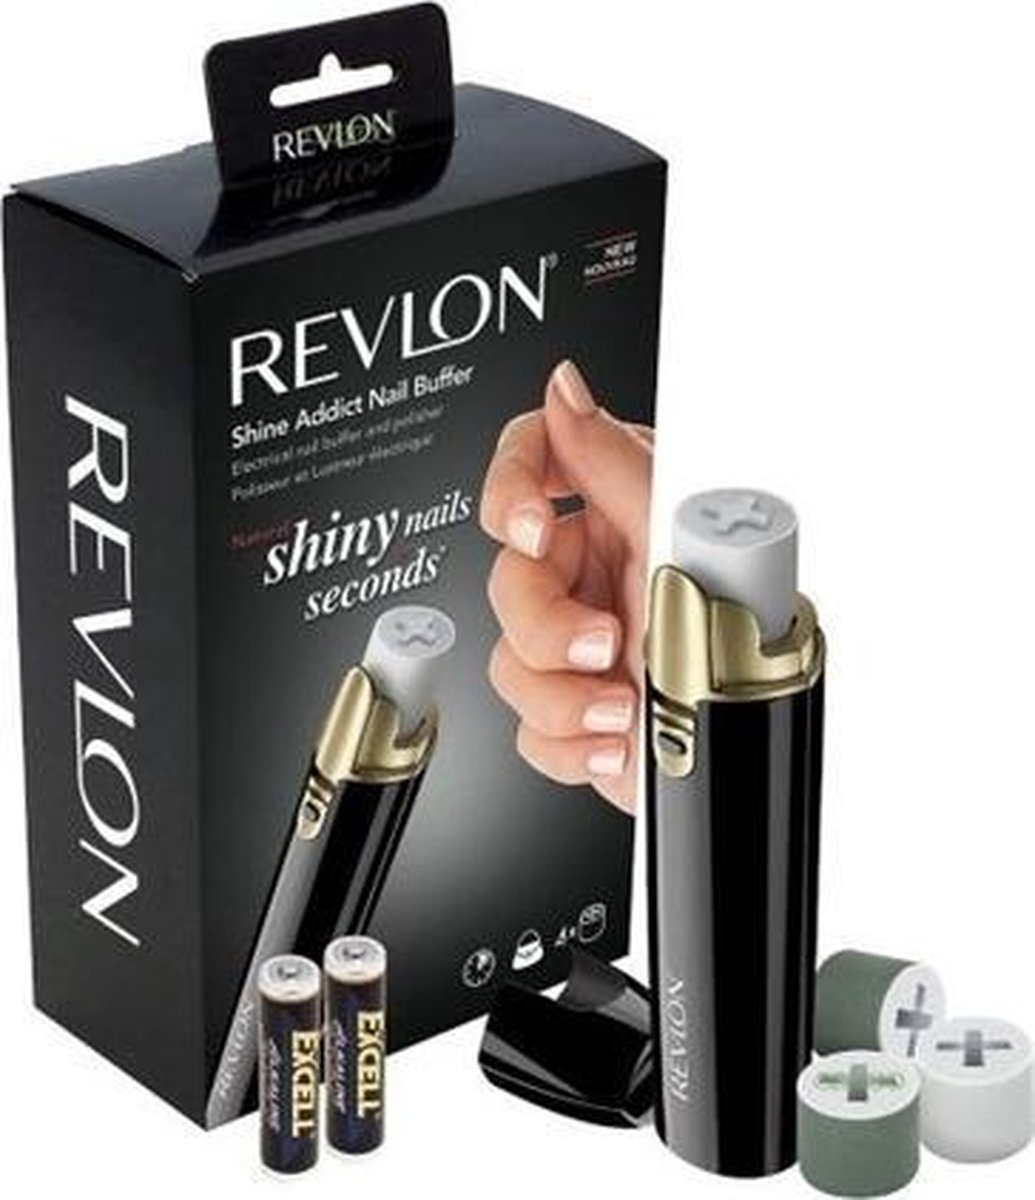 ELEKTRISCHE NAGELVIJL - REVLON + GRATIS verzorgingsproduct nagelriemen - zwart met goud - incl. batterijen - Revlon